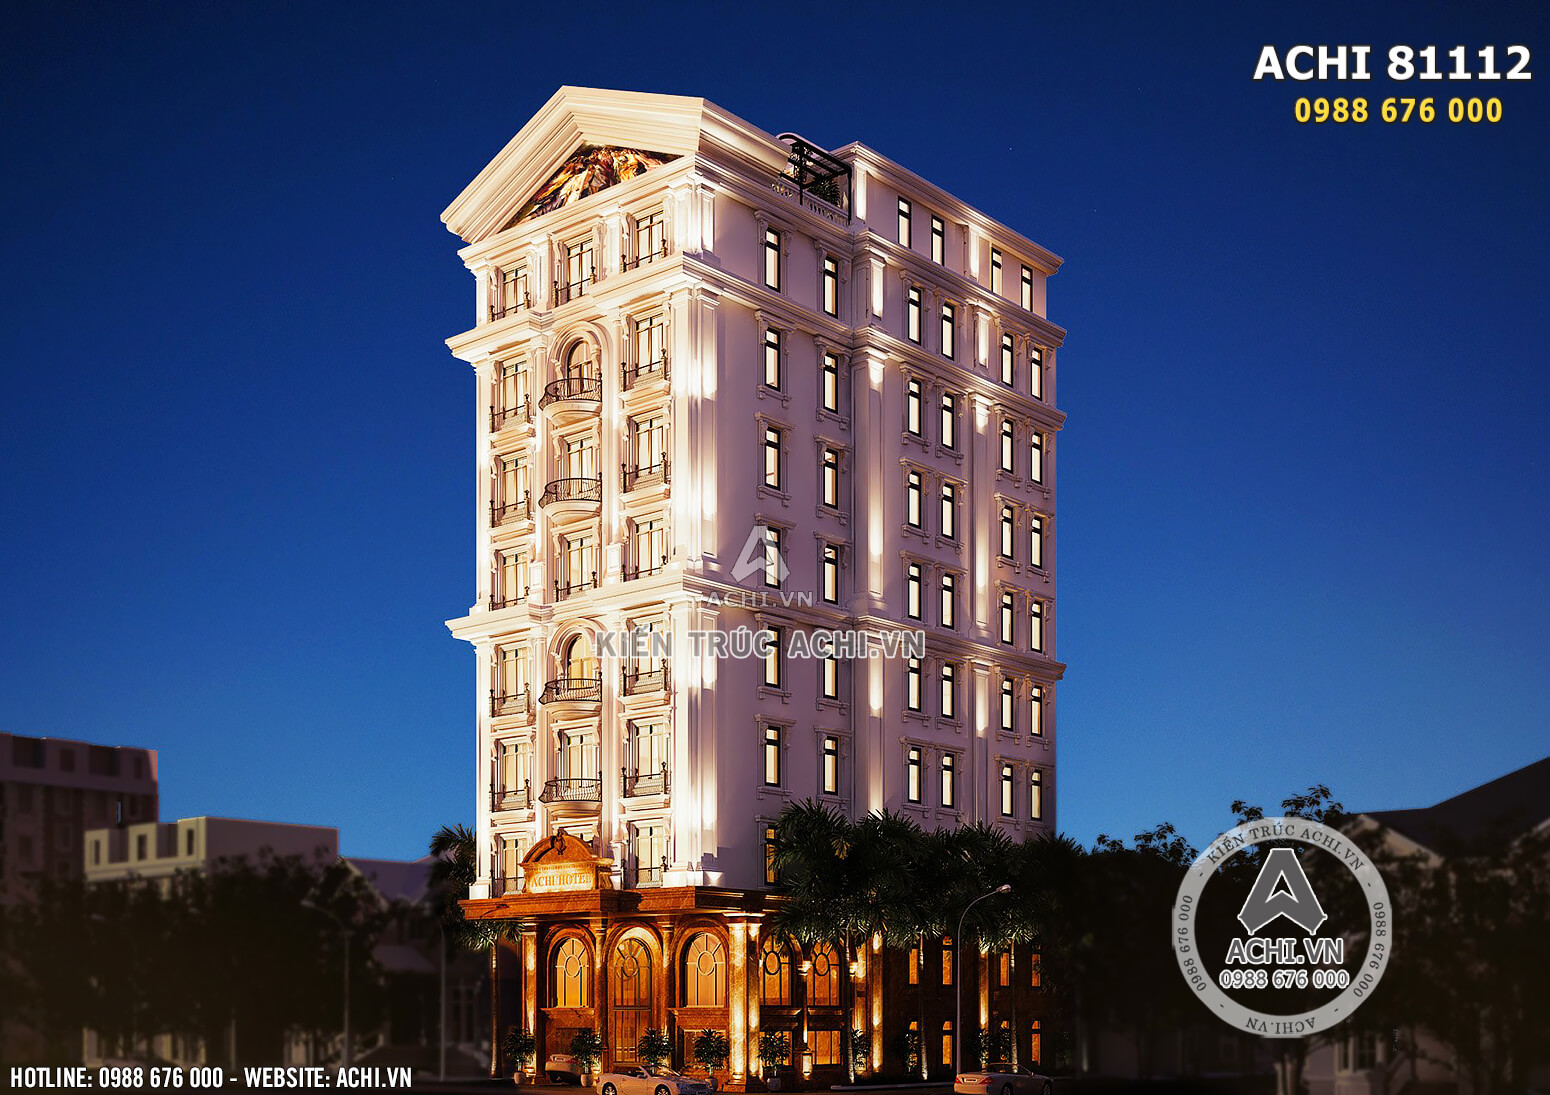 Hình ảnh: Các khối hình kiến trúc của khách sạn 3 sao đều được thiết kế đăng đối